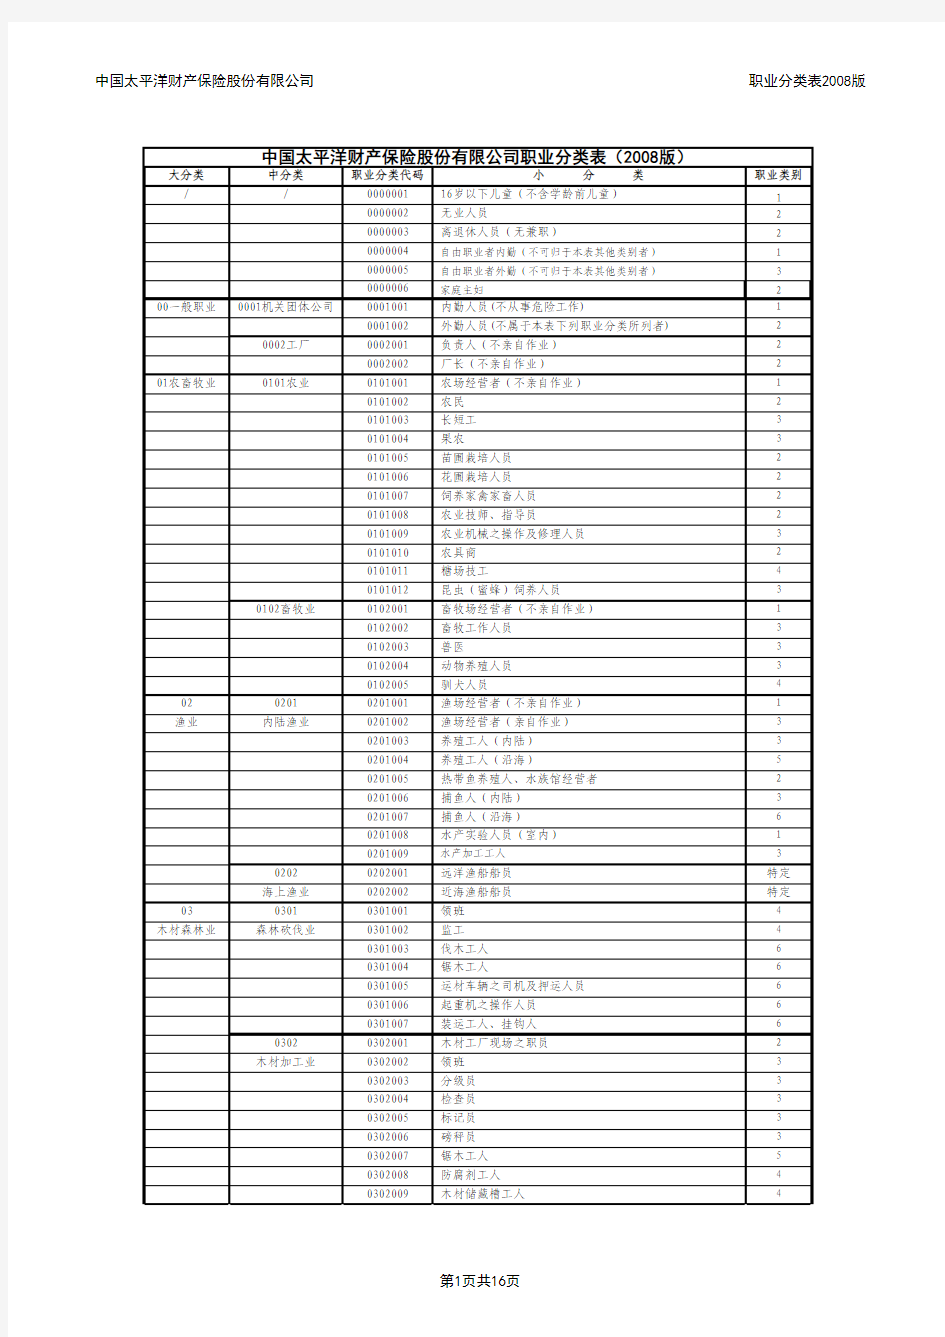 中国太平洋财产保险股份有限公司职业分类表